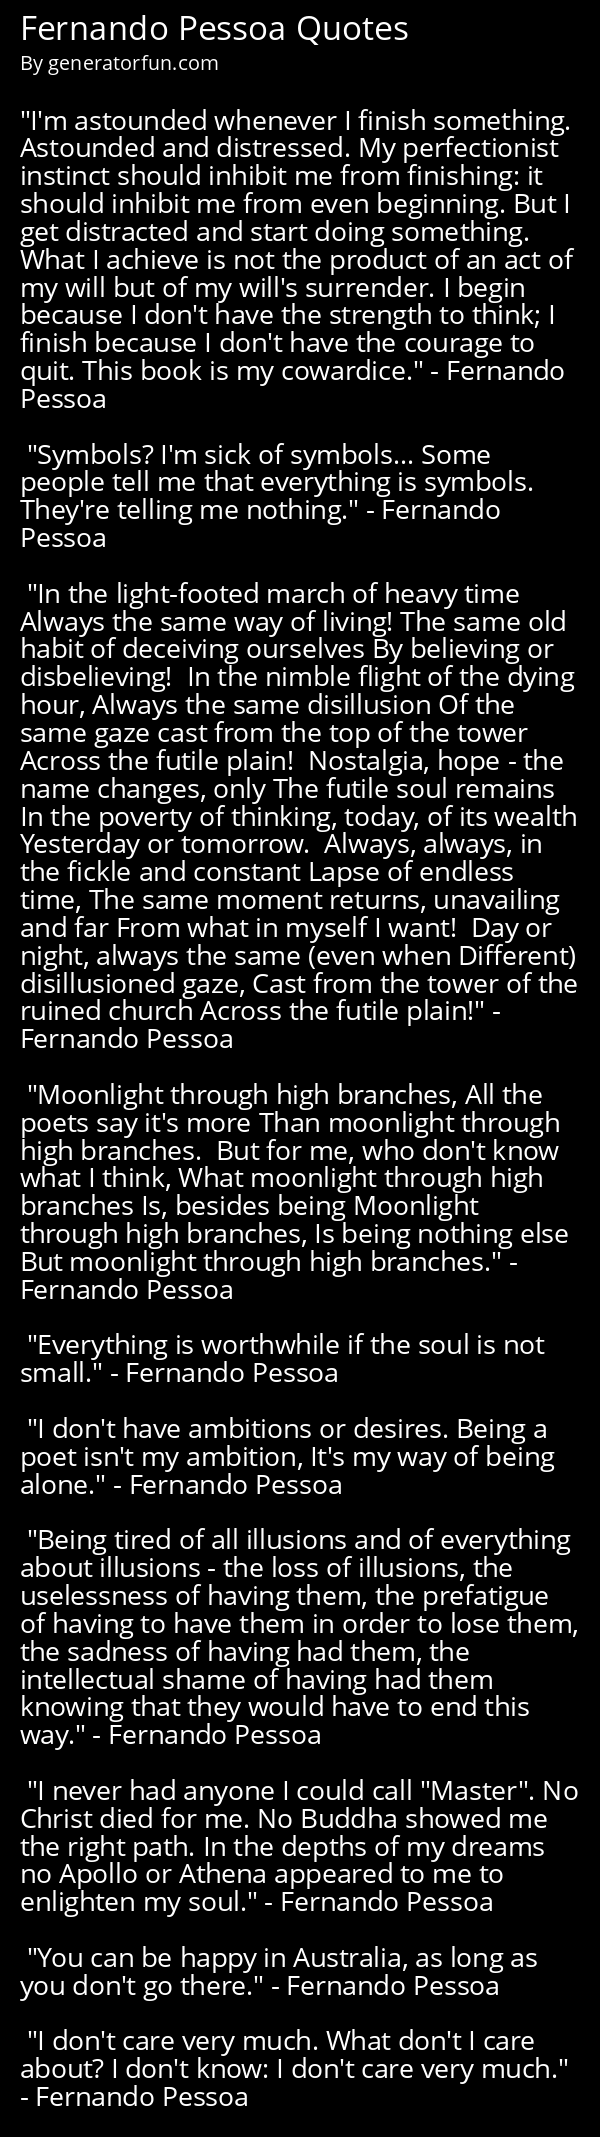 Fernando Pessoa Quotes